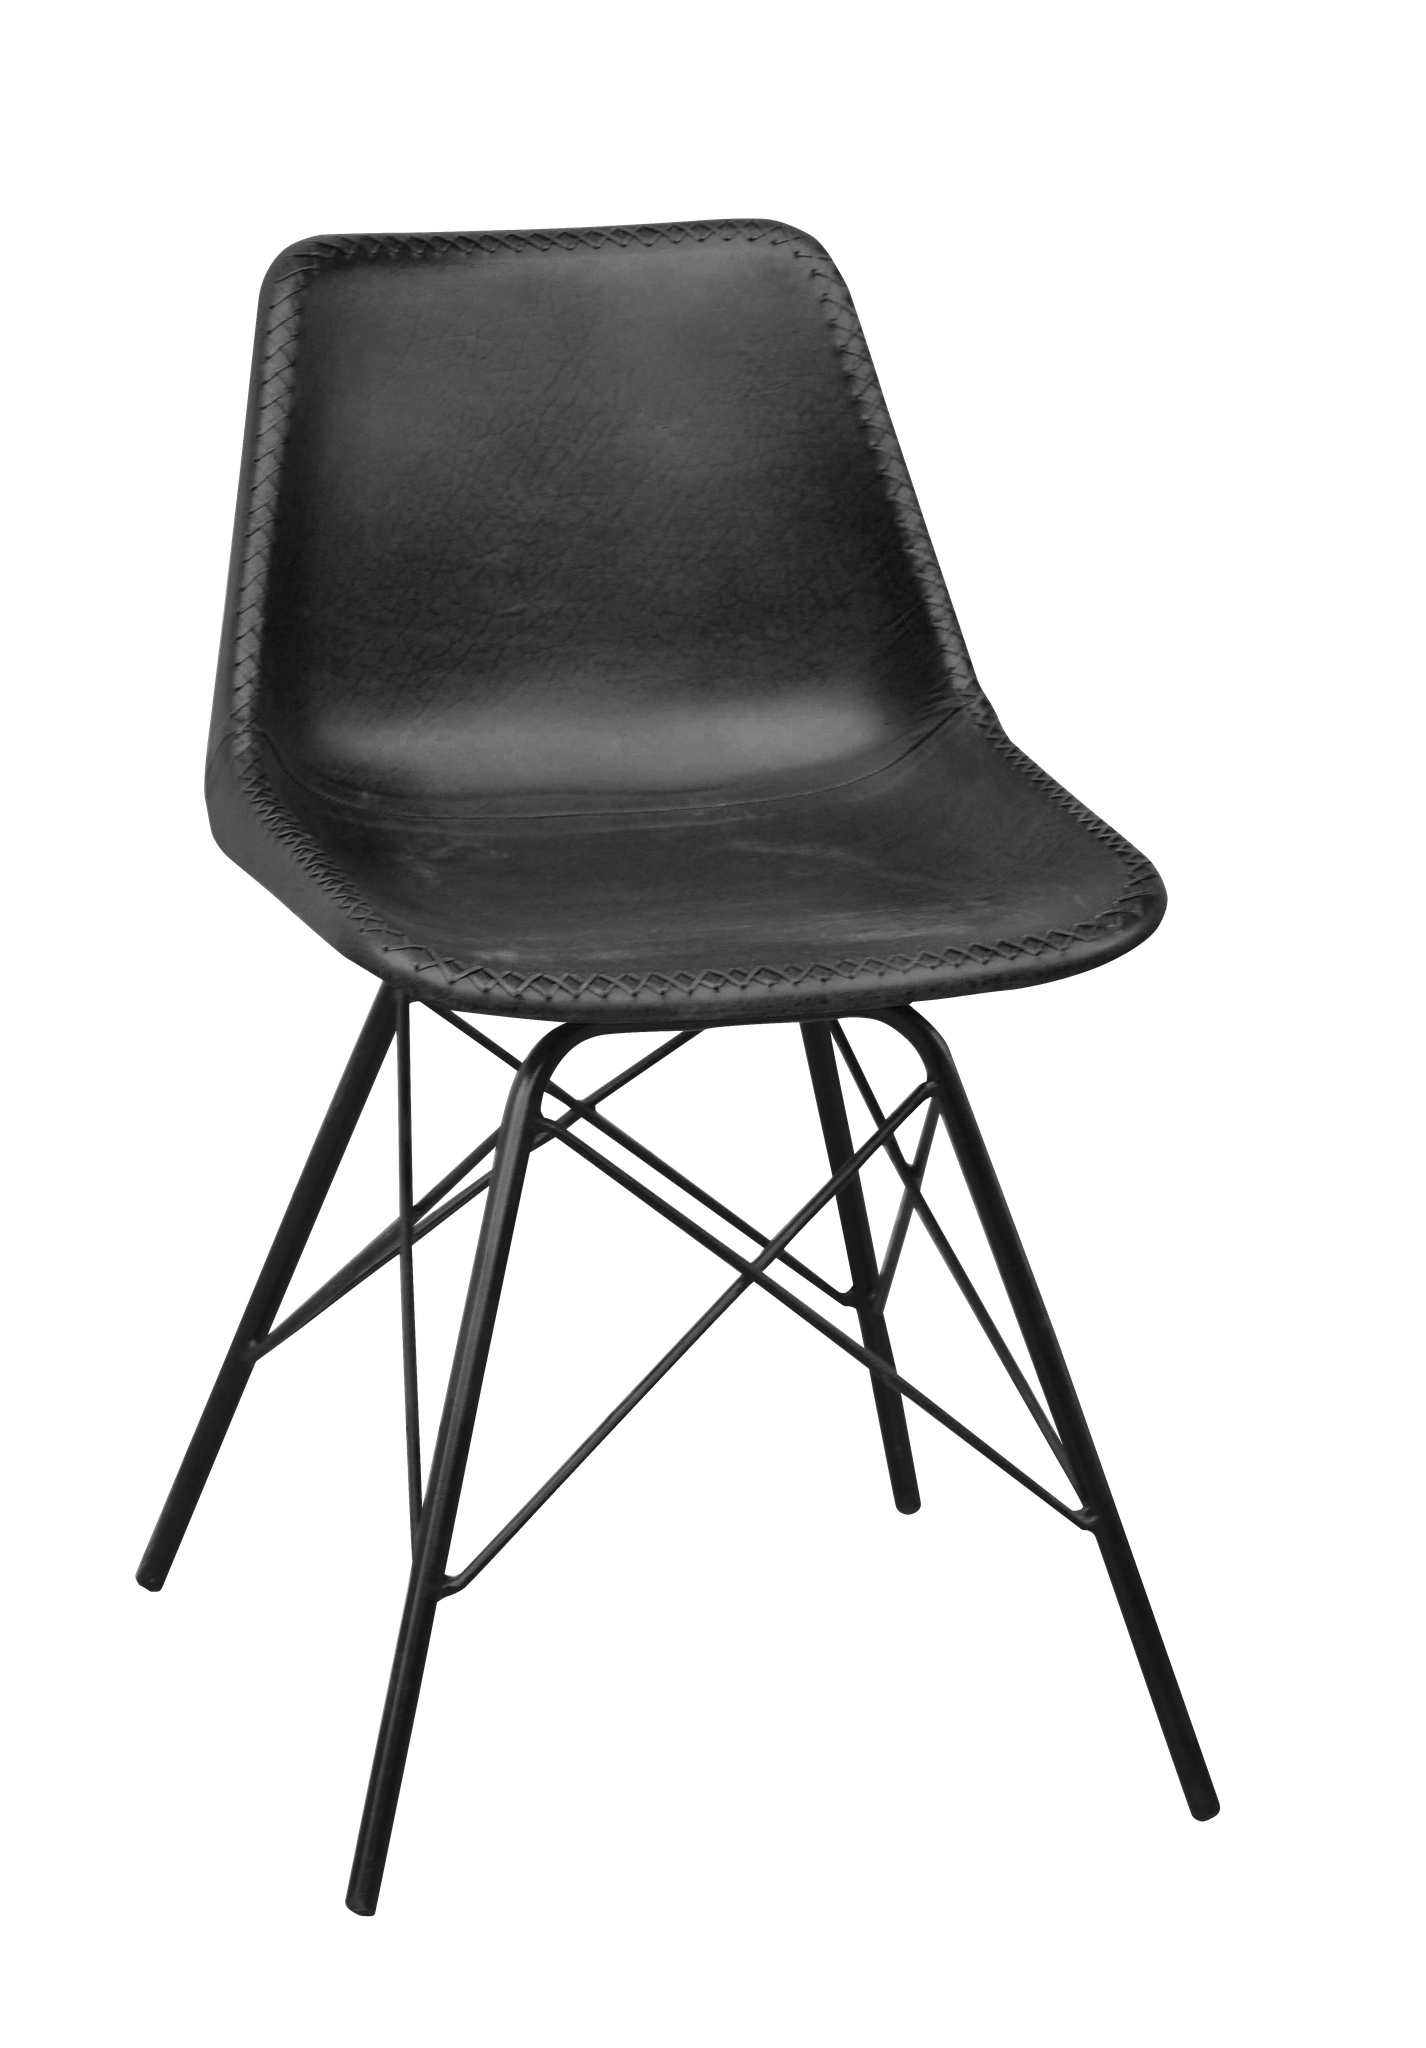 KILROY INDBO Melissa #7692 spisebordsstol - sort læder og jern